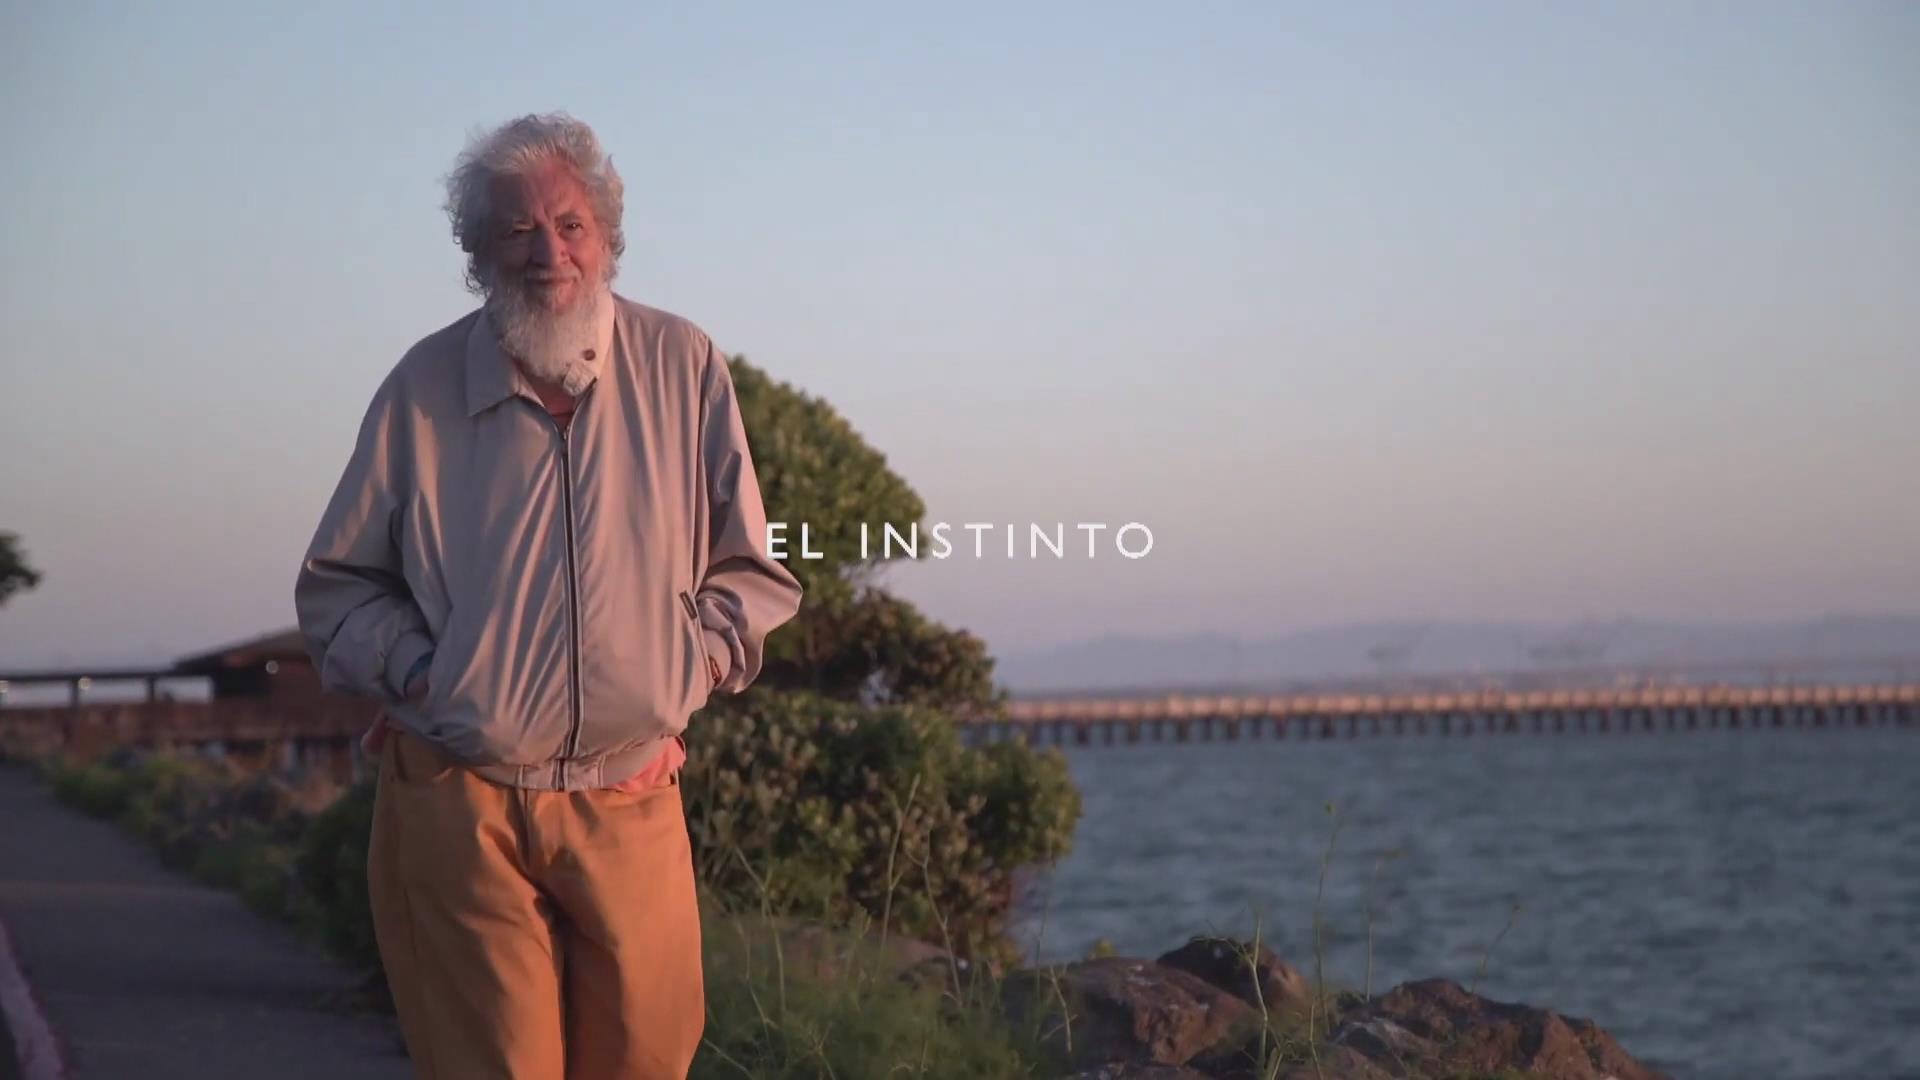 Documental explora vida de psiquiatra chileno Claudio Naranjo, exponente mundial de psicología transpersonal